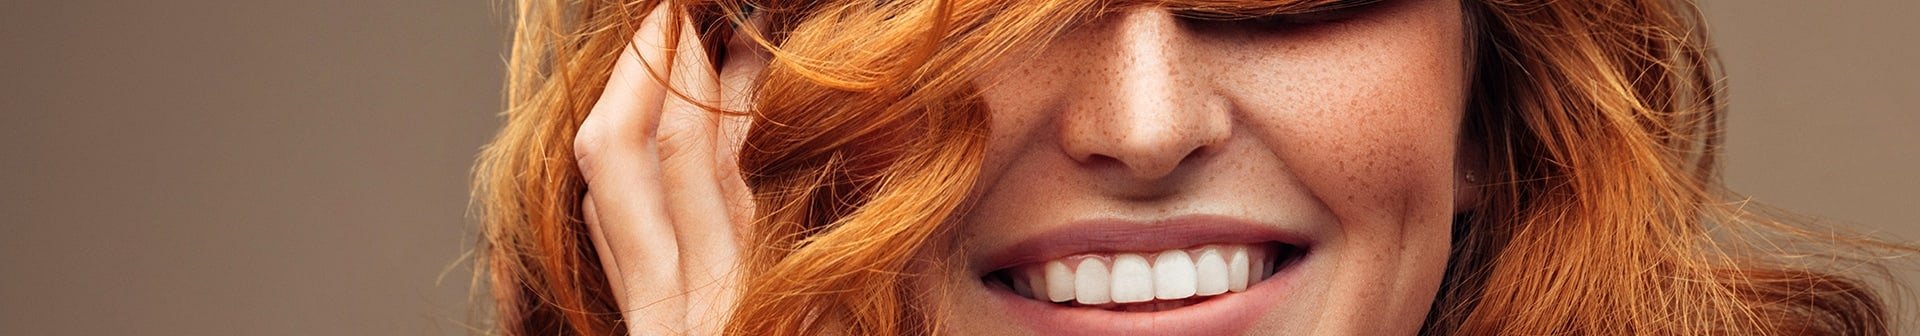 Lächelnde Frau hält sich ihre langen, roten Haare vor die Augen